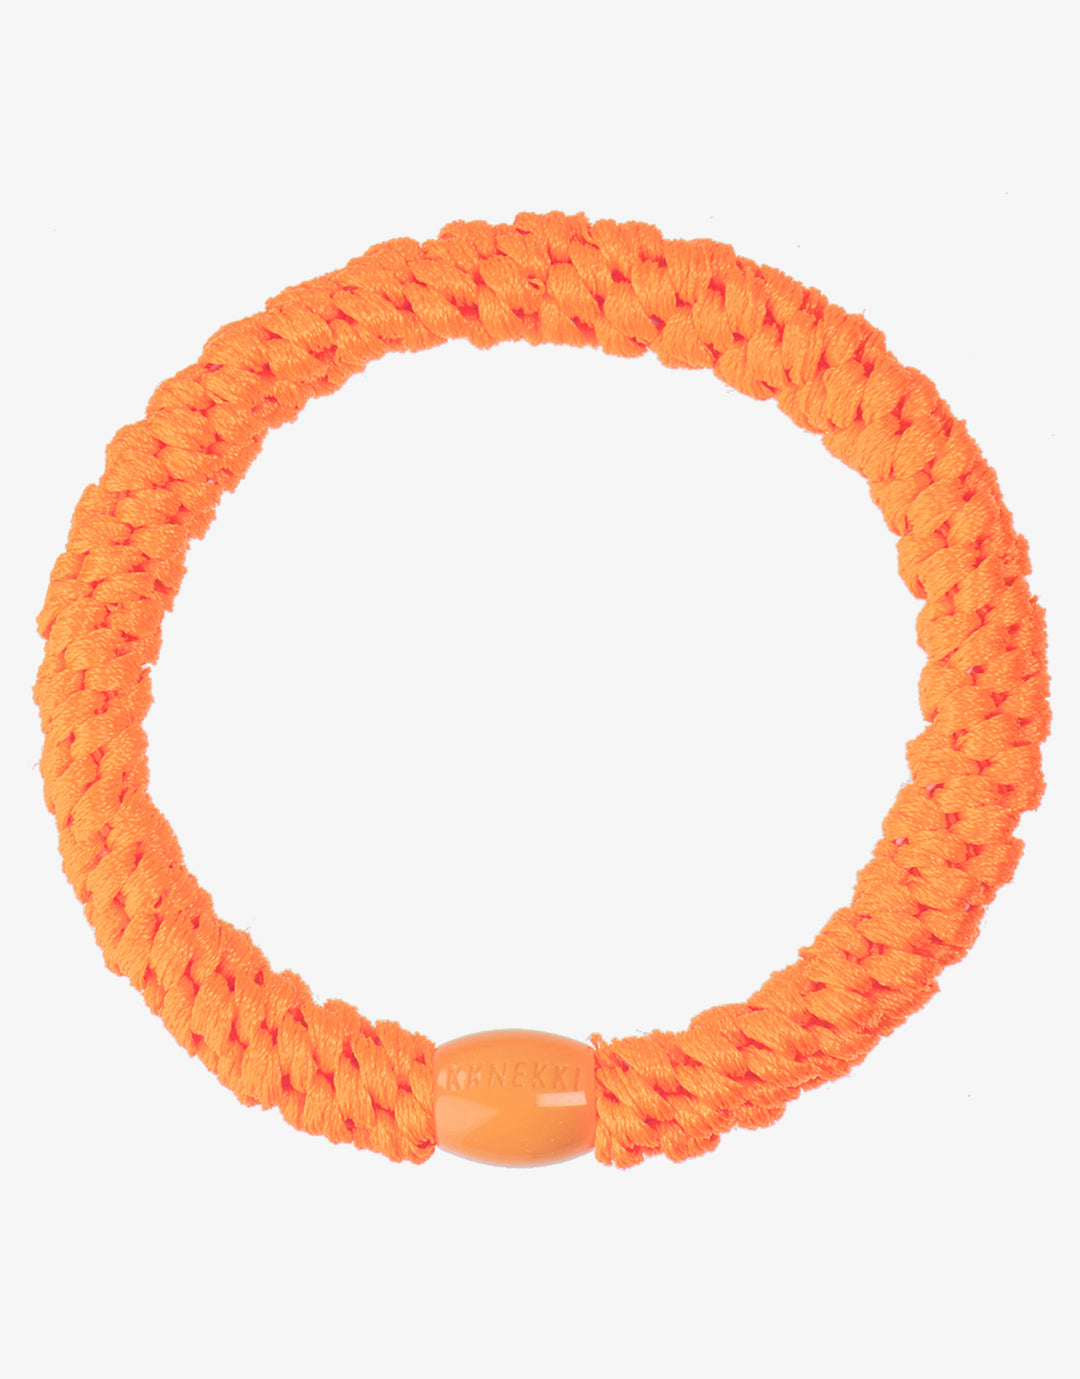 Original Hair Tie - Neon Orange - Simply Beach UK